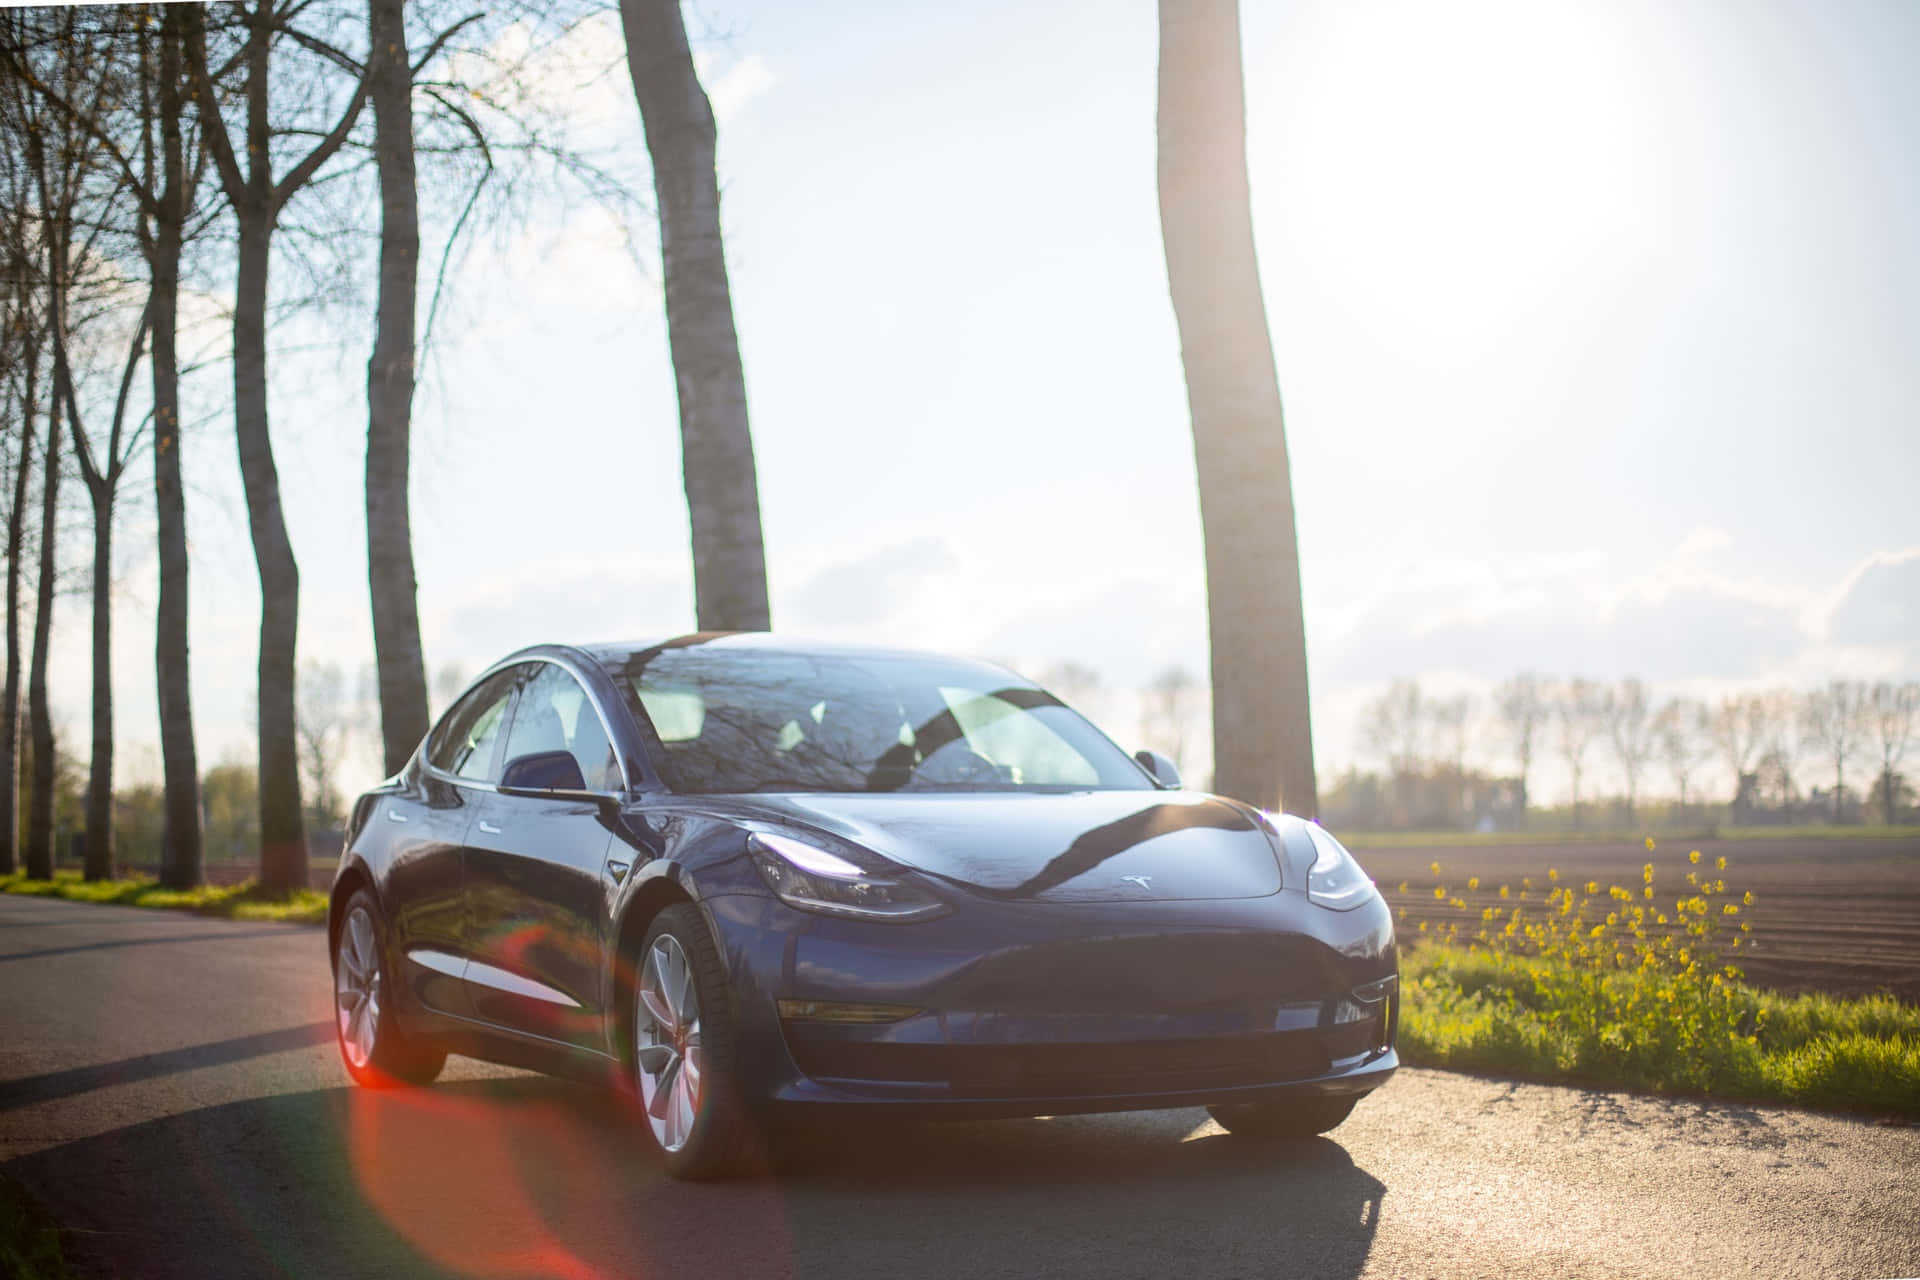 Teslastopmoderne Teknologi, Som Er Designet Til At Gøre Ren Energi Tilgængelig For Alle.